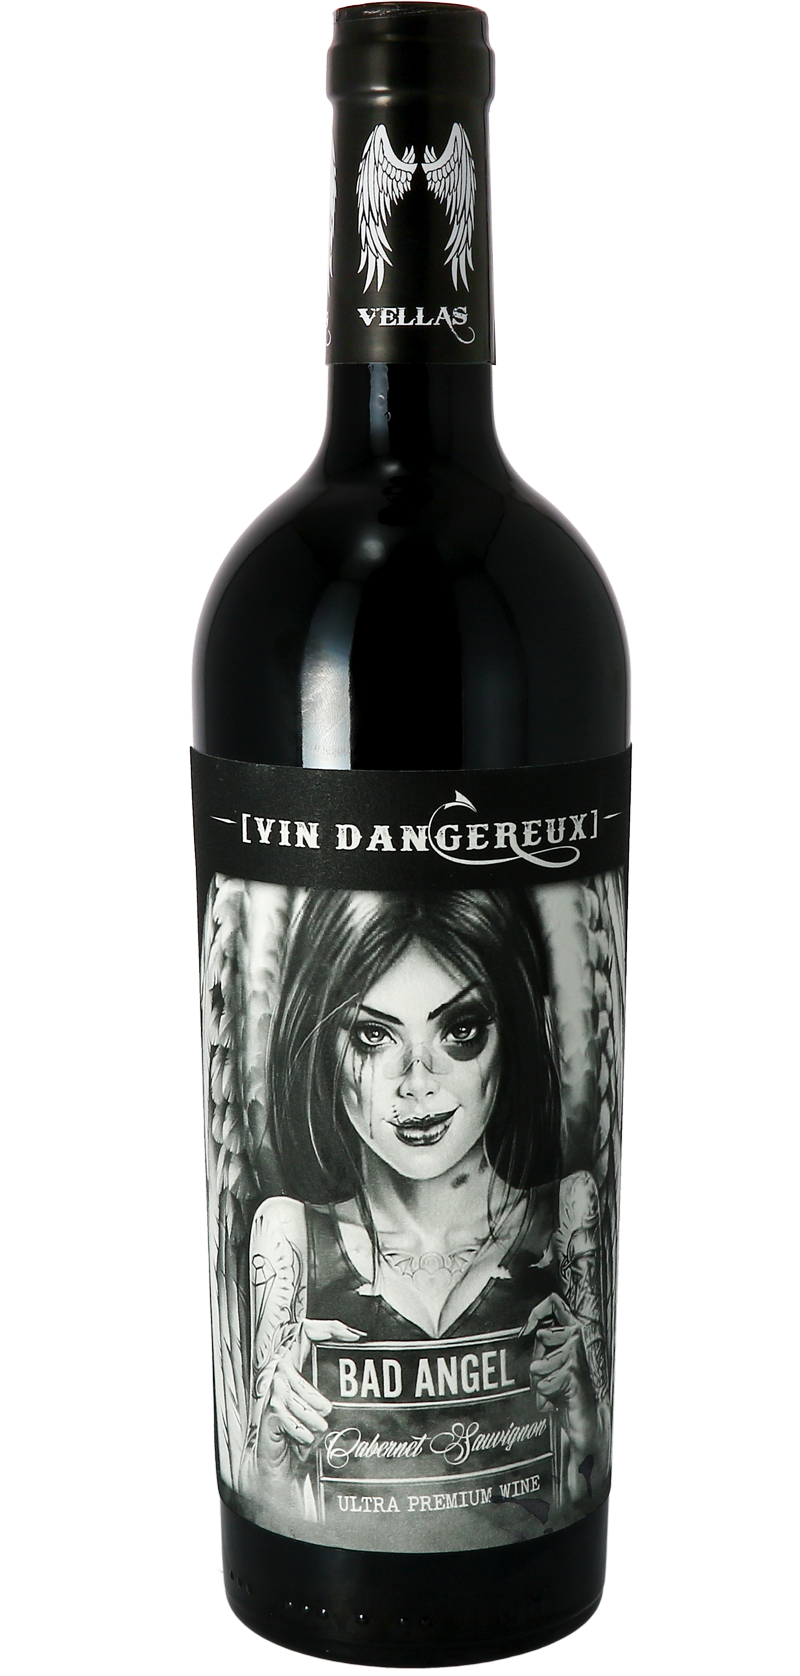 Bad Angel – Dangerous wine - Cabernet-Sauvignon